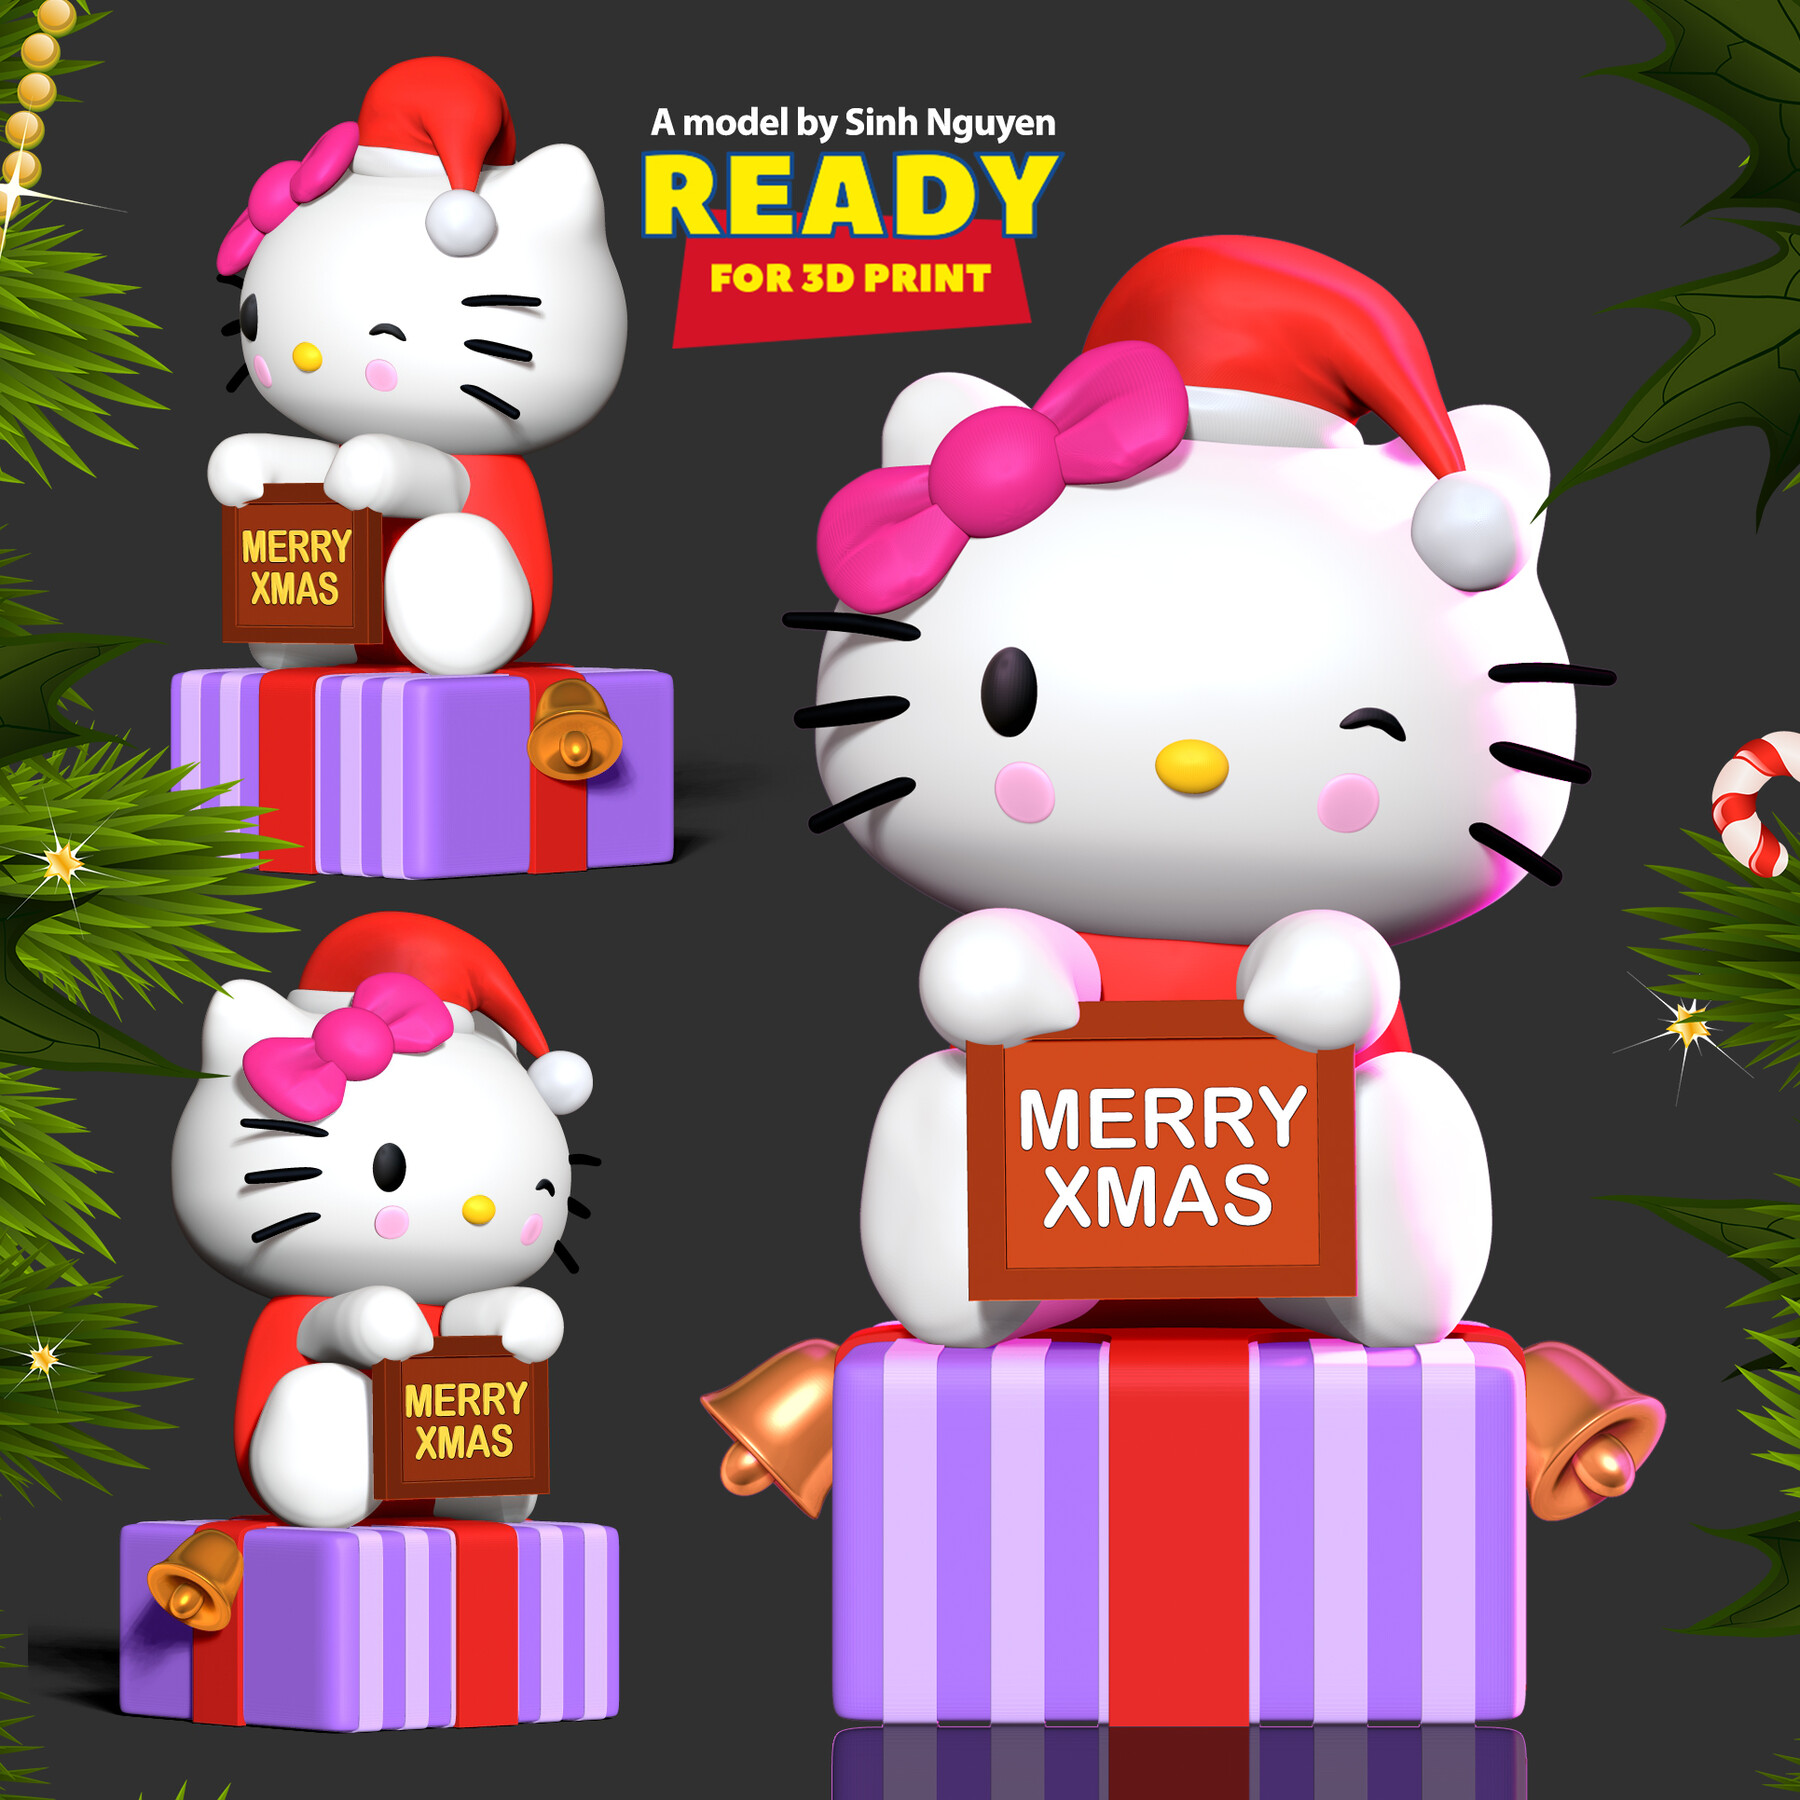 Hello Kitty Giáng Sinh là một chủ đề không thể thiếu trong mùa lễ hội này. Bạn yêu thích Hello Kitty và muốn tìm hiểu thêm về phiên bản này? Hãy xem ngay hình ảnh liên quan để khám phá những chi tiết đáng yêu về bộ sưu tập đặc biệt này nhé!